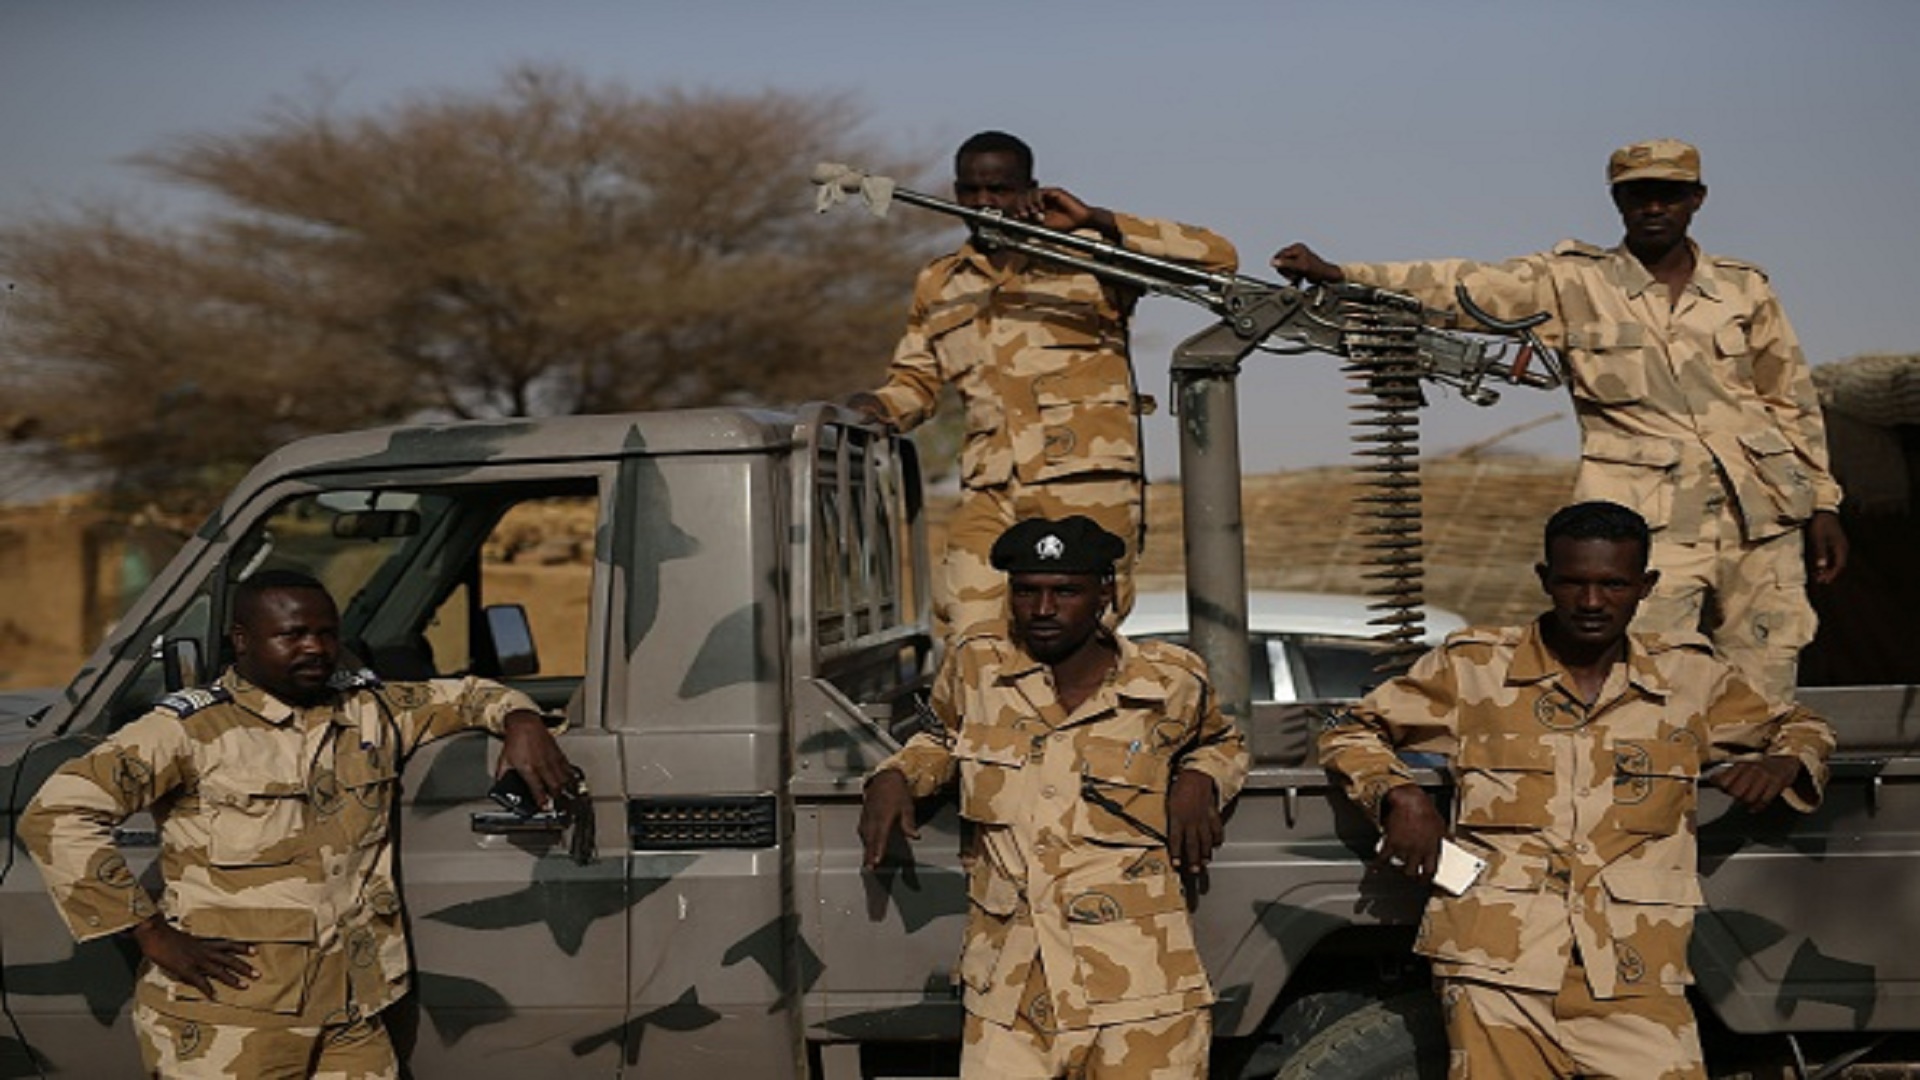 الجيش السوداني: القوات المسلحة متماسكة وستحسم الموقف قريبا